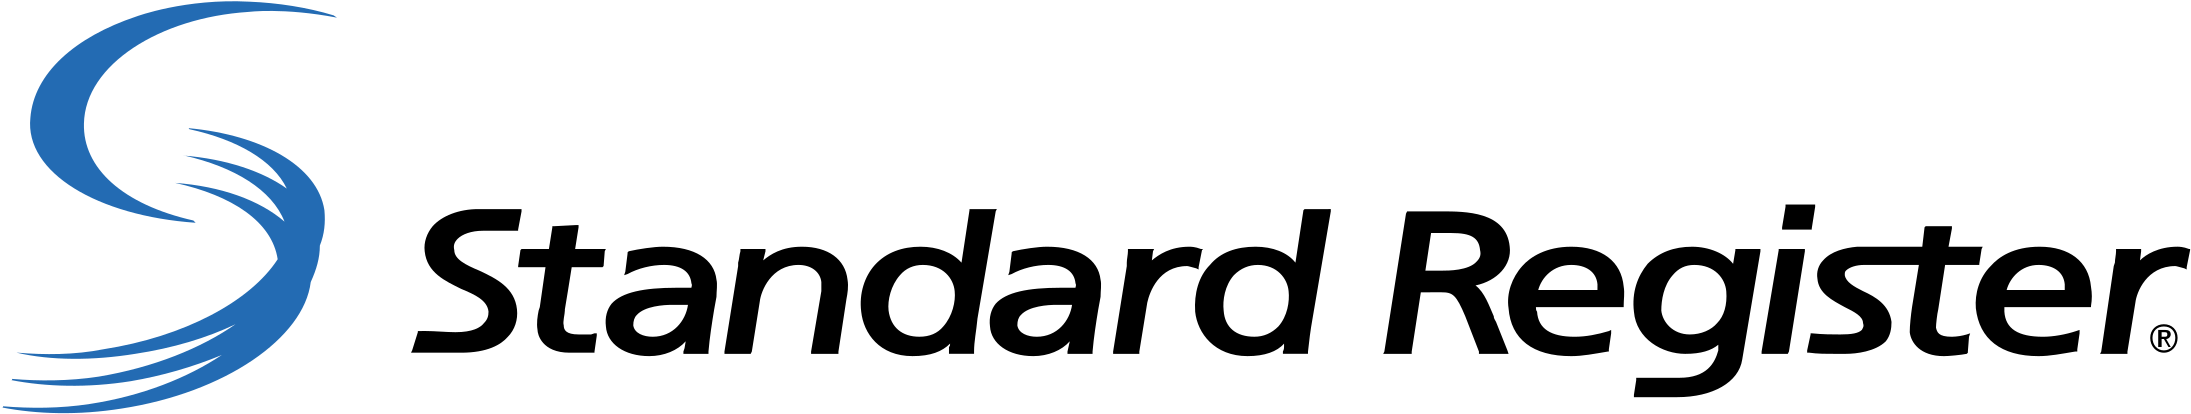 Standard Register Logo Png Transparent - Standard Register Logo (2400x2400), Png Download